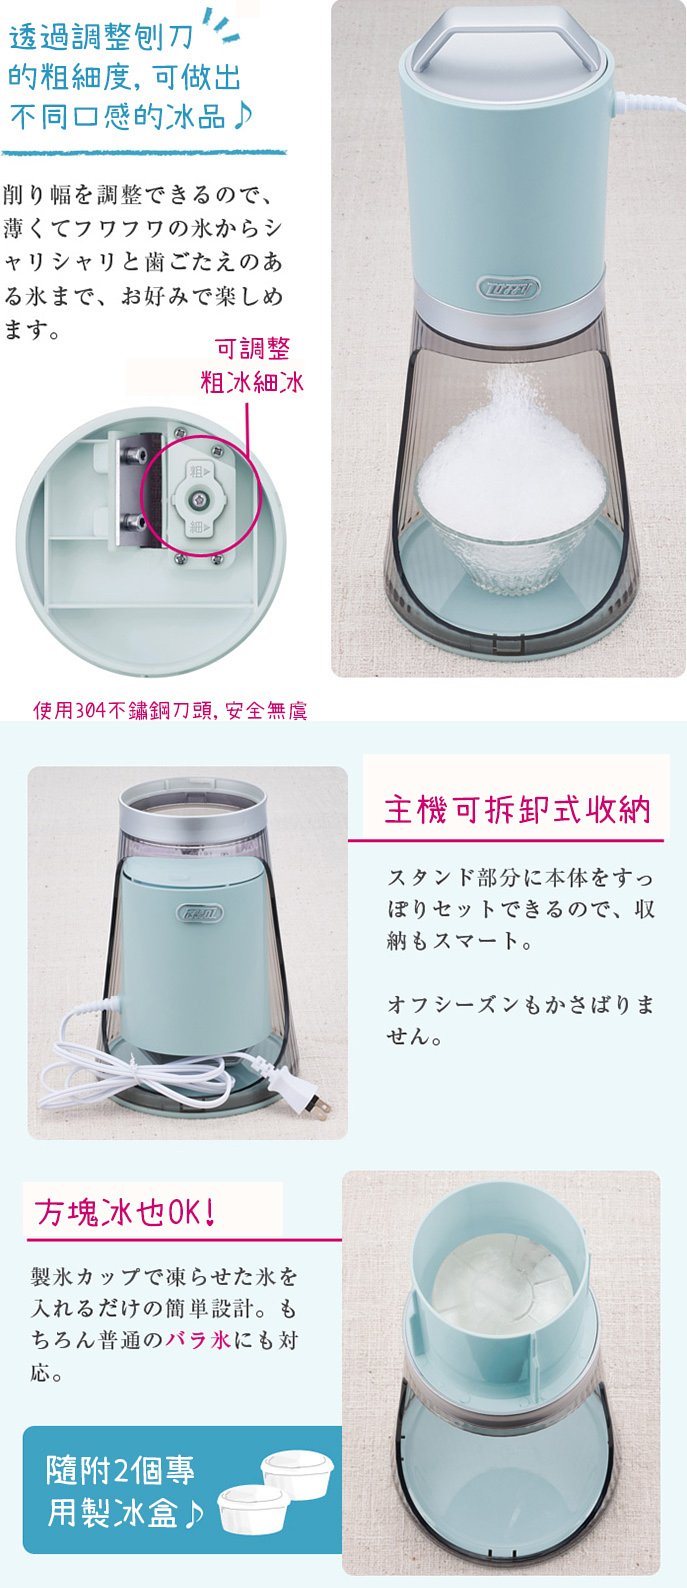 日本 Toffy 復古電動刨冰機 寧靜藍